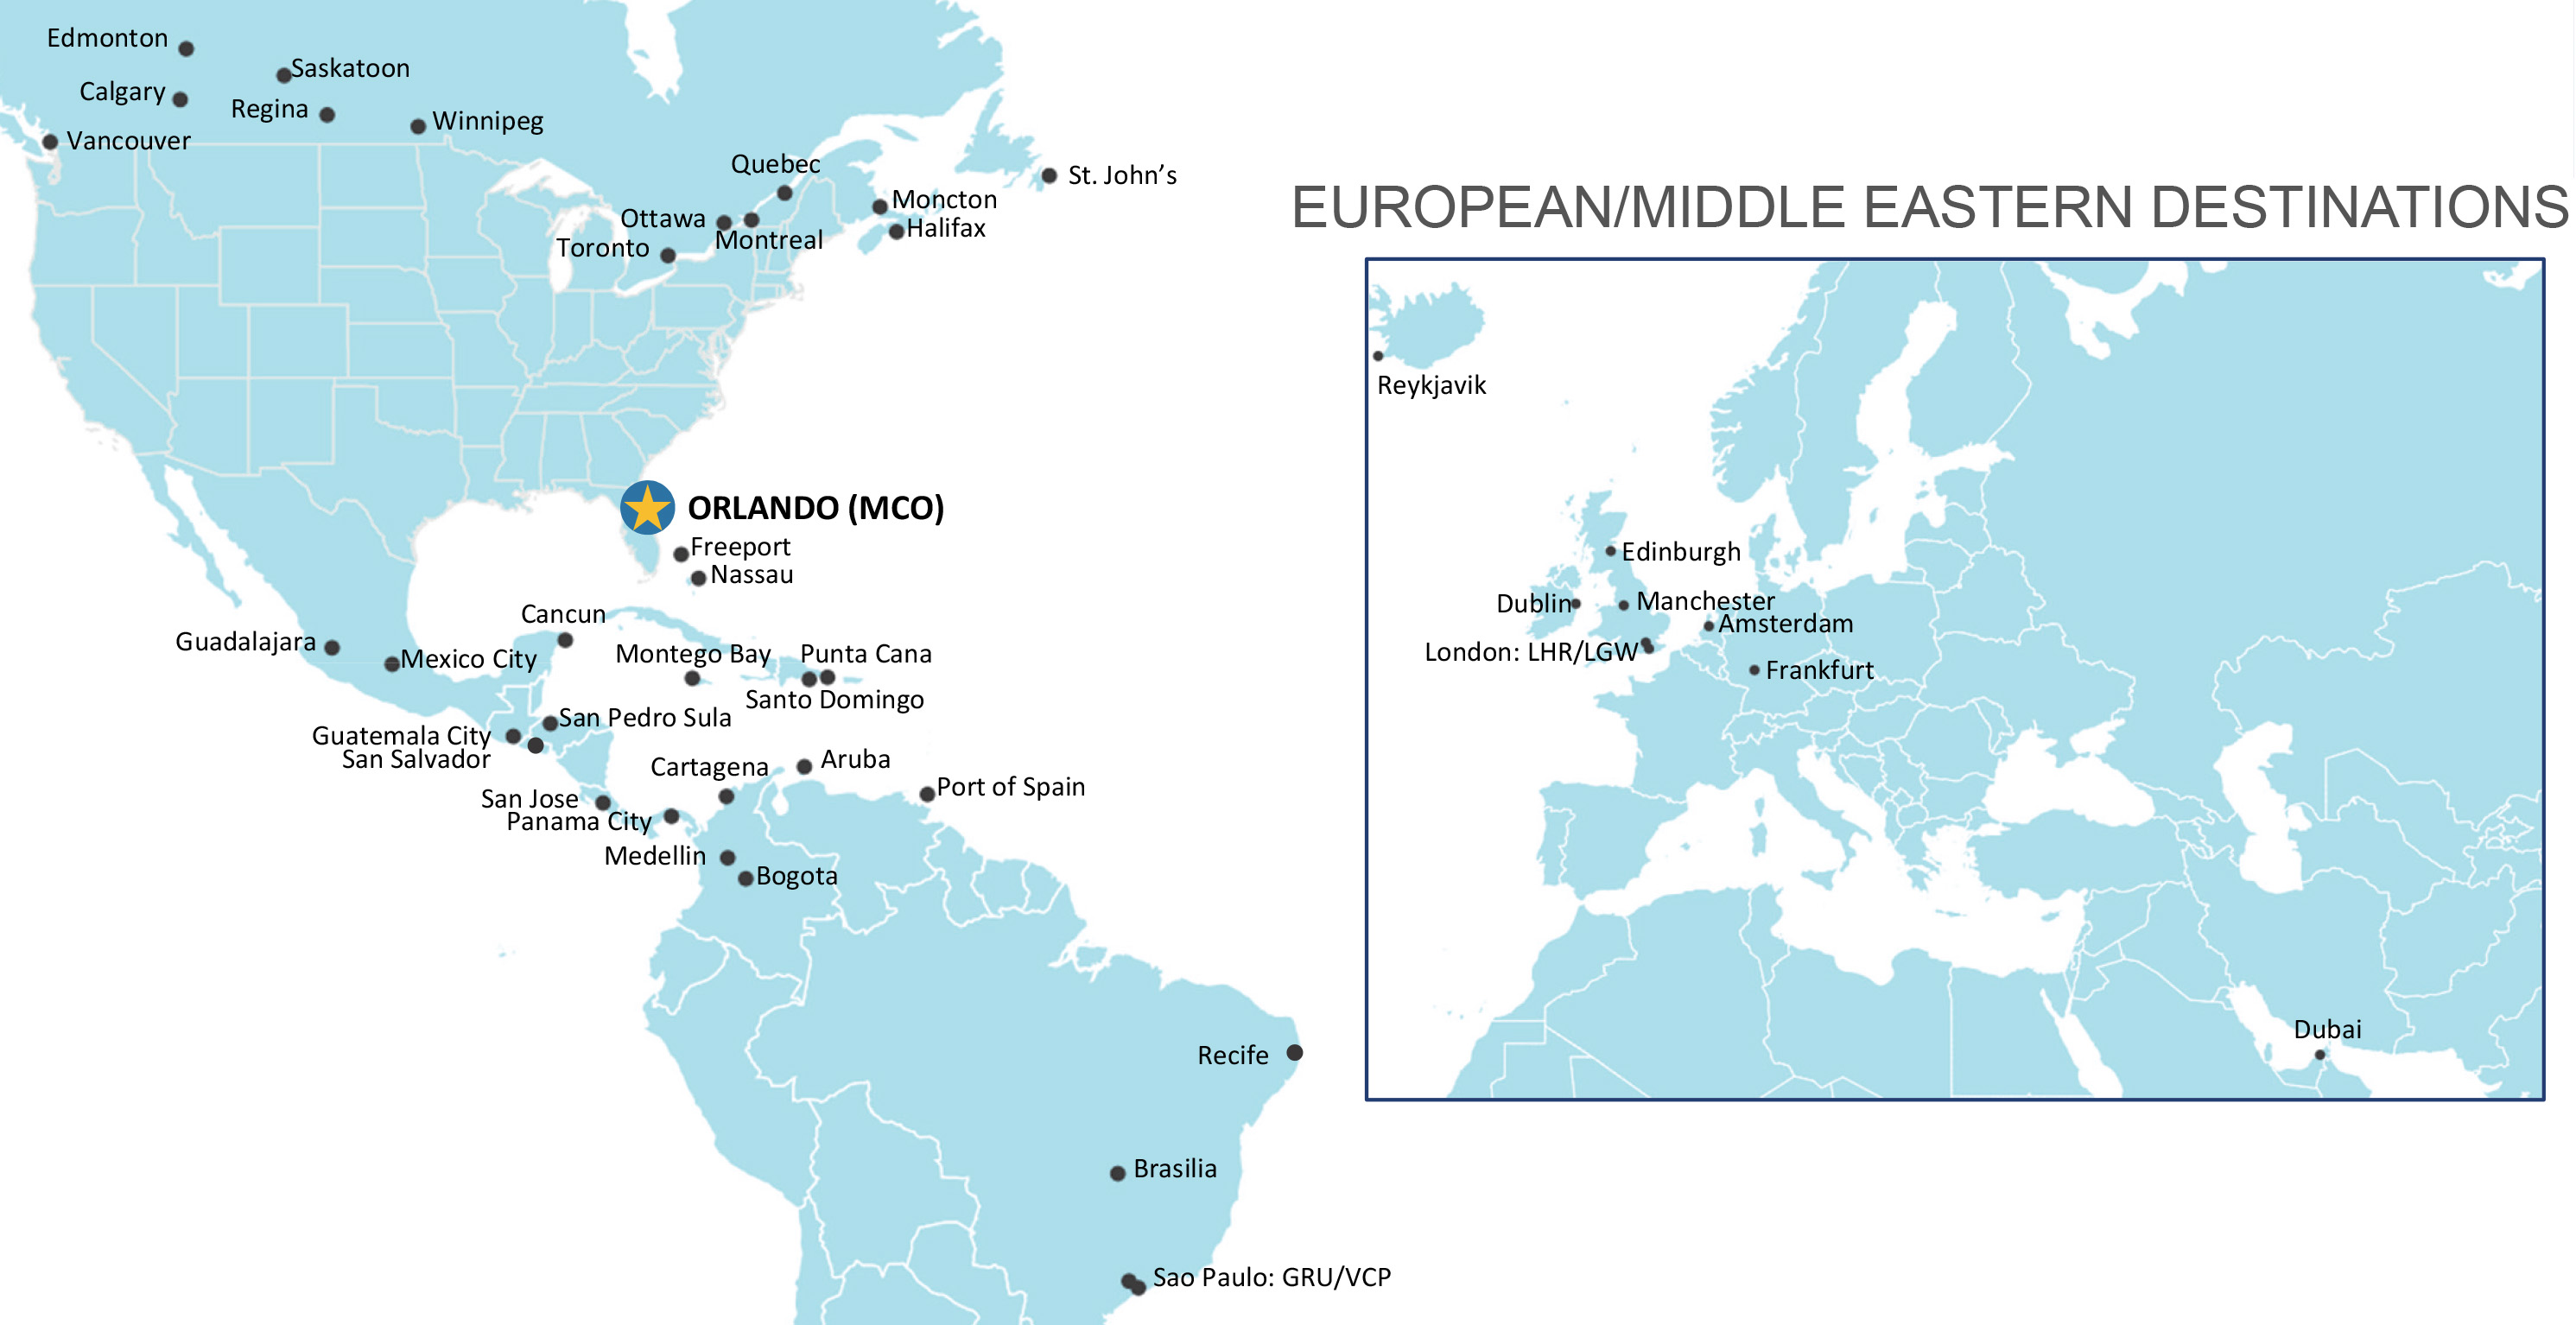 Emirates Destinations Map 2020/2021